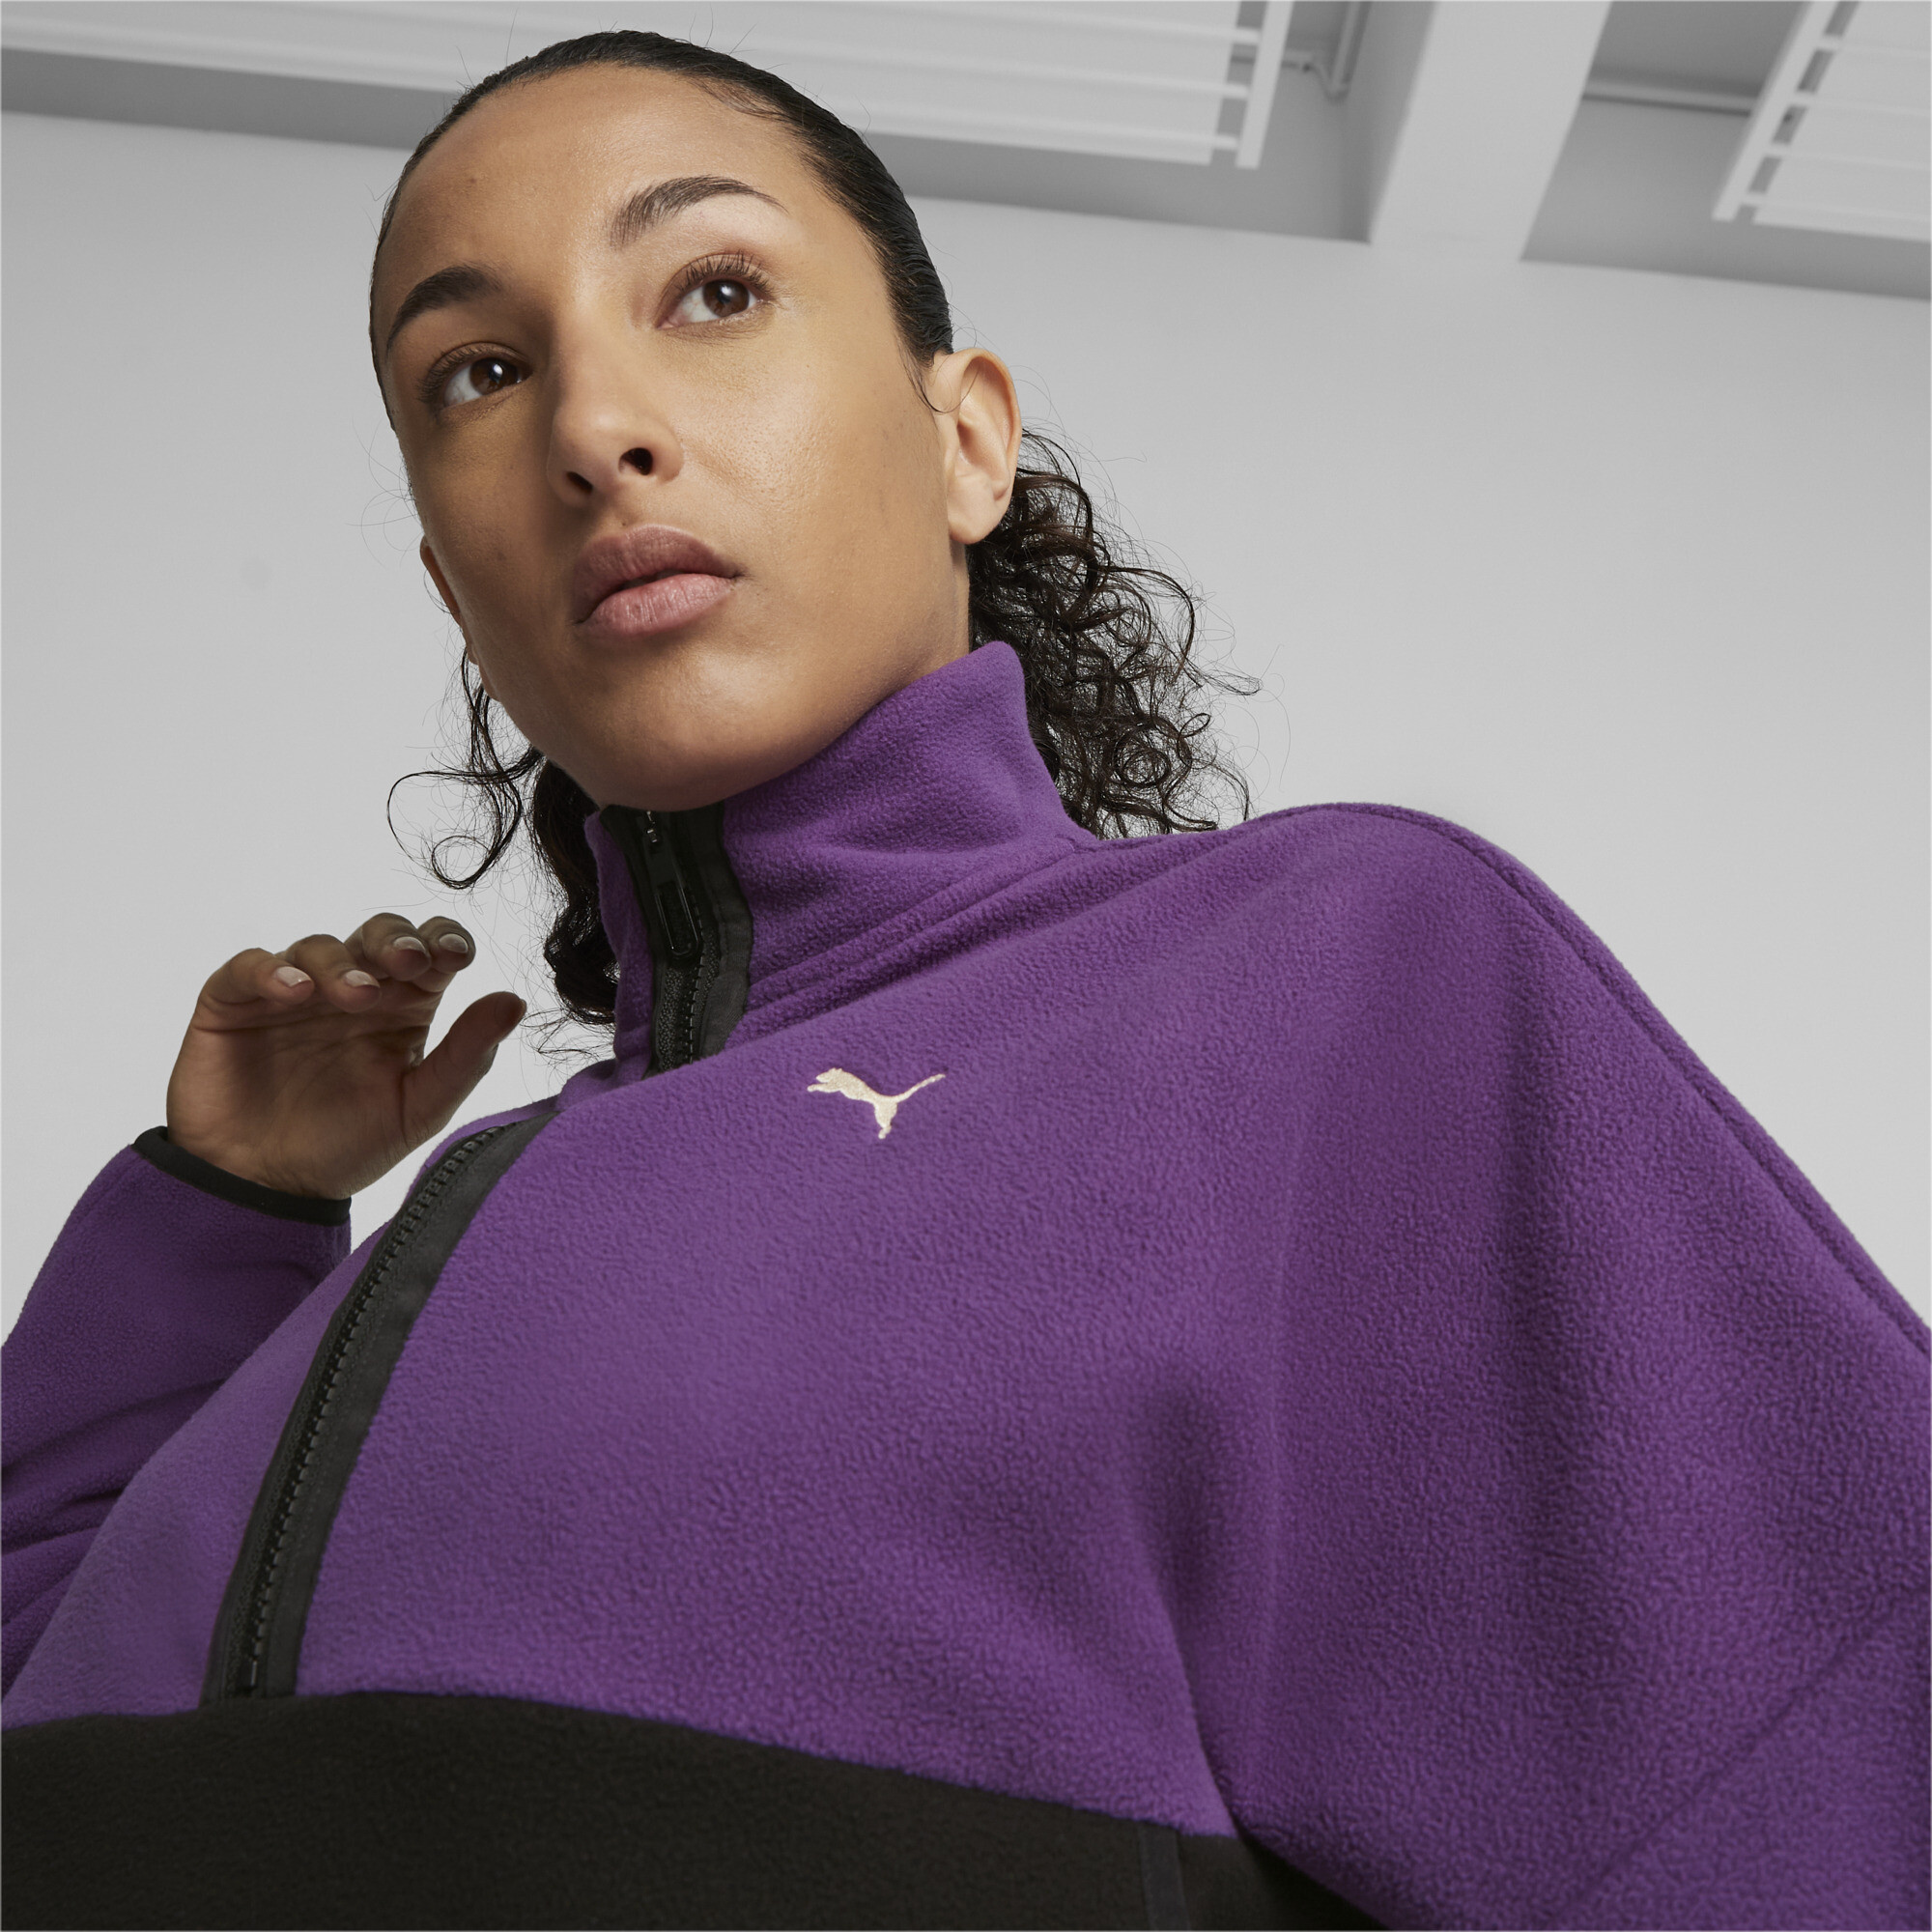 Women's PUMA Fit Training Polar Fleece Top In Purple, Size XS